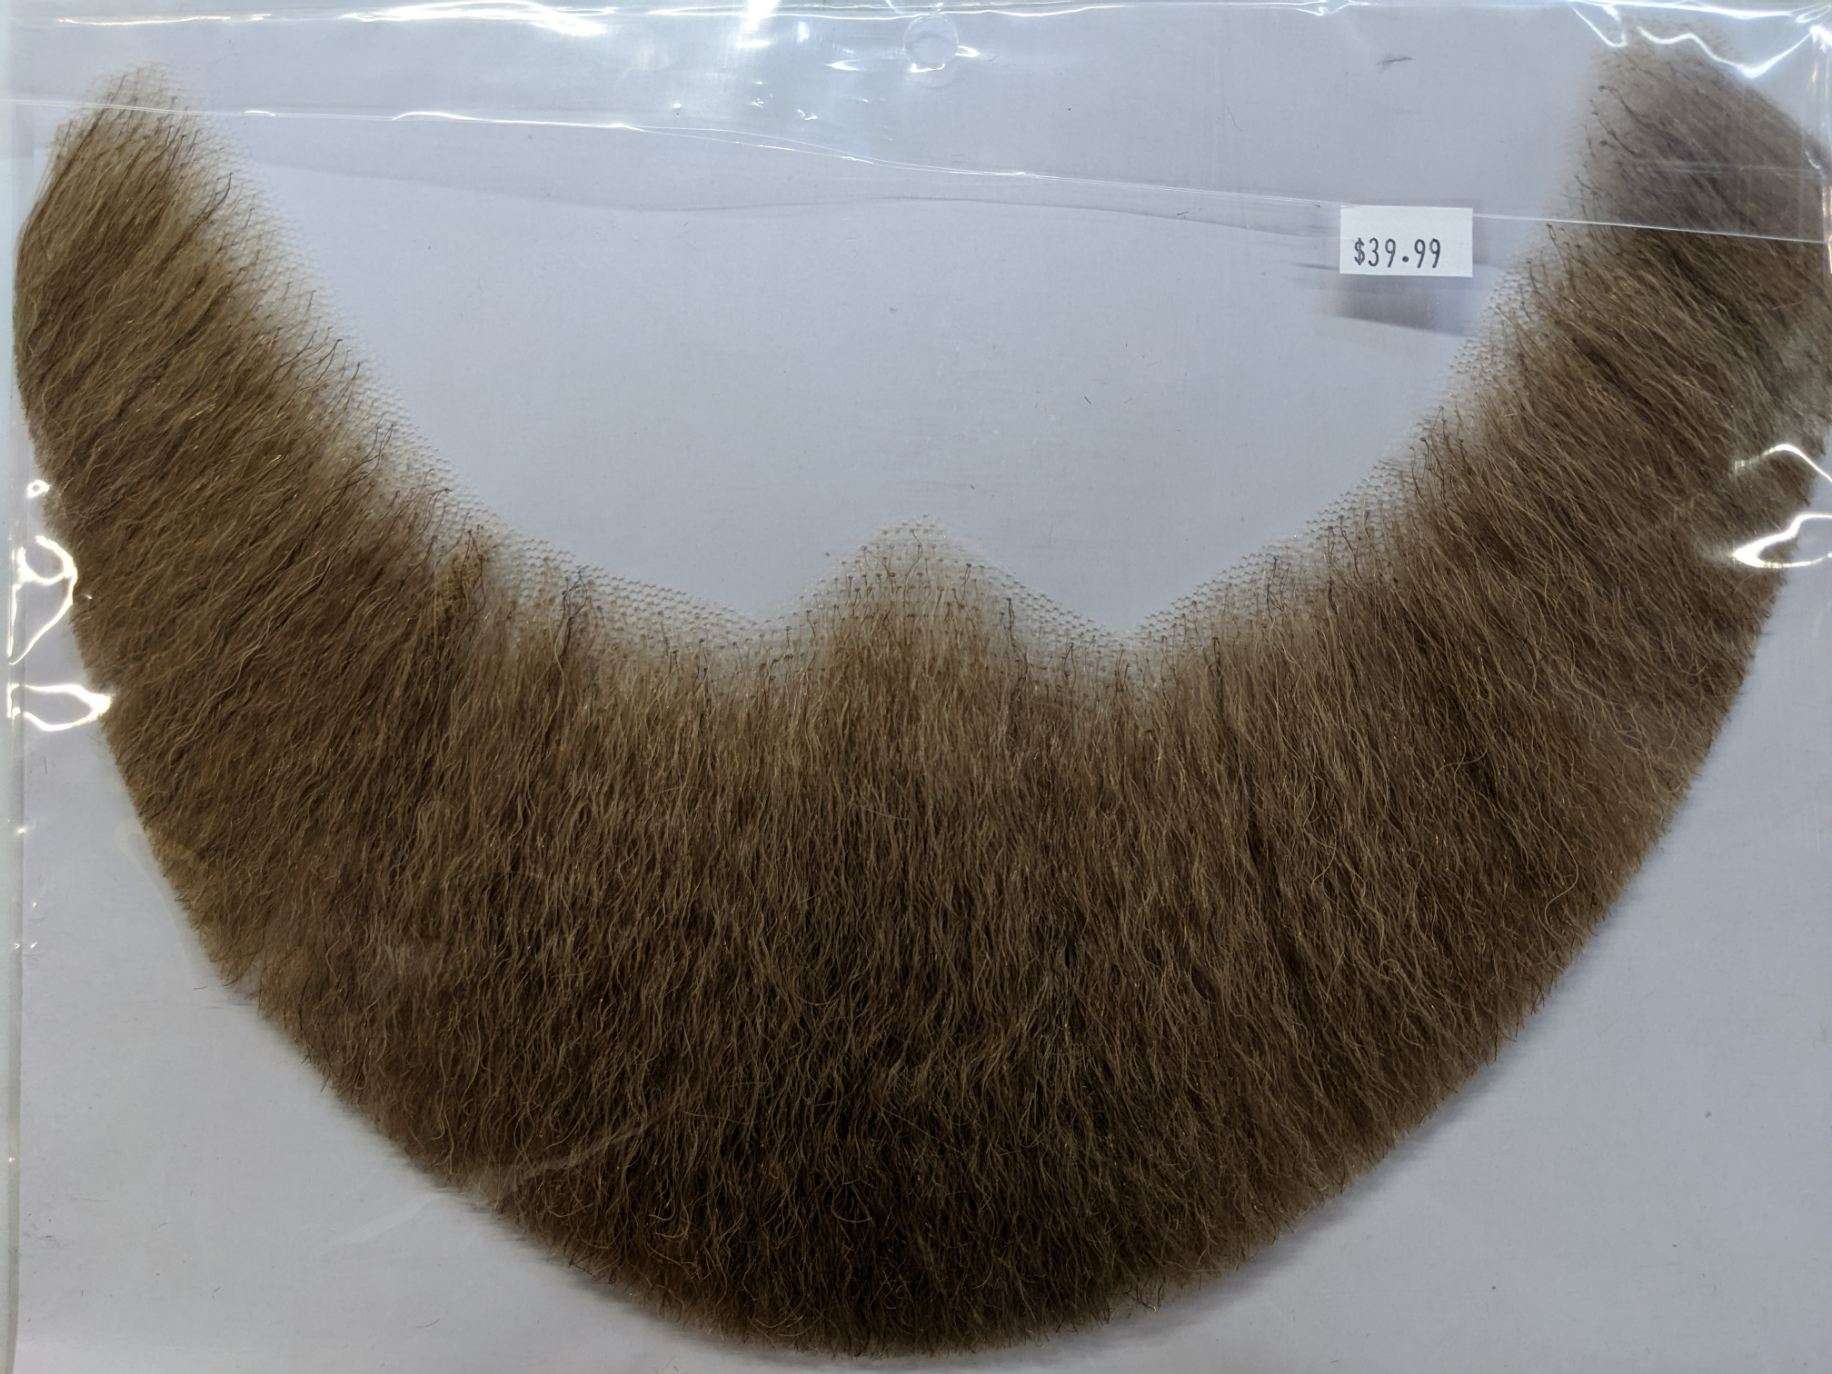 Full-Face Human Hair Beard